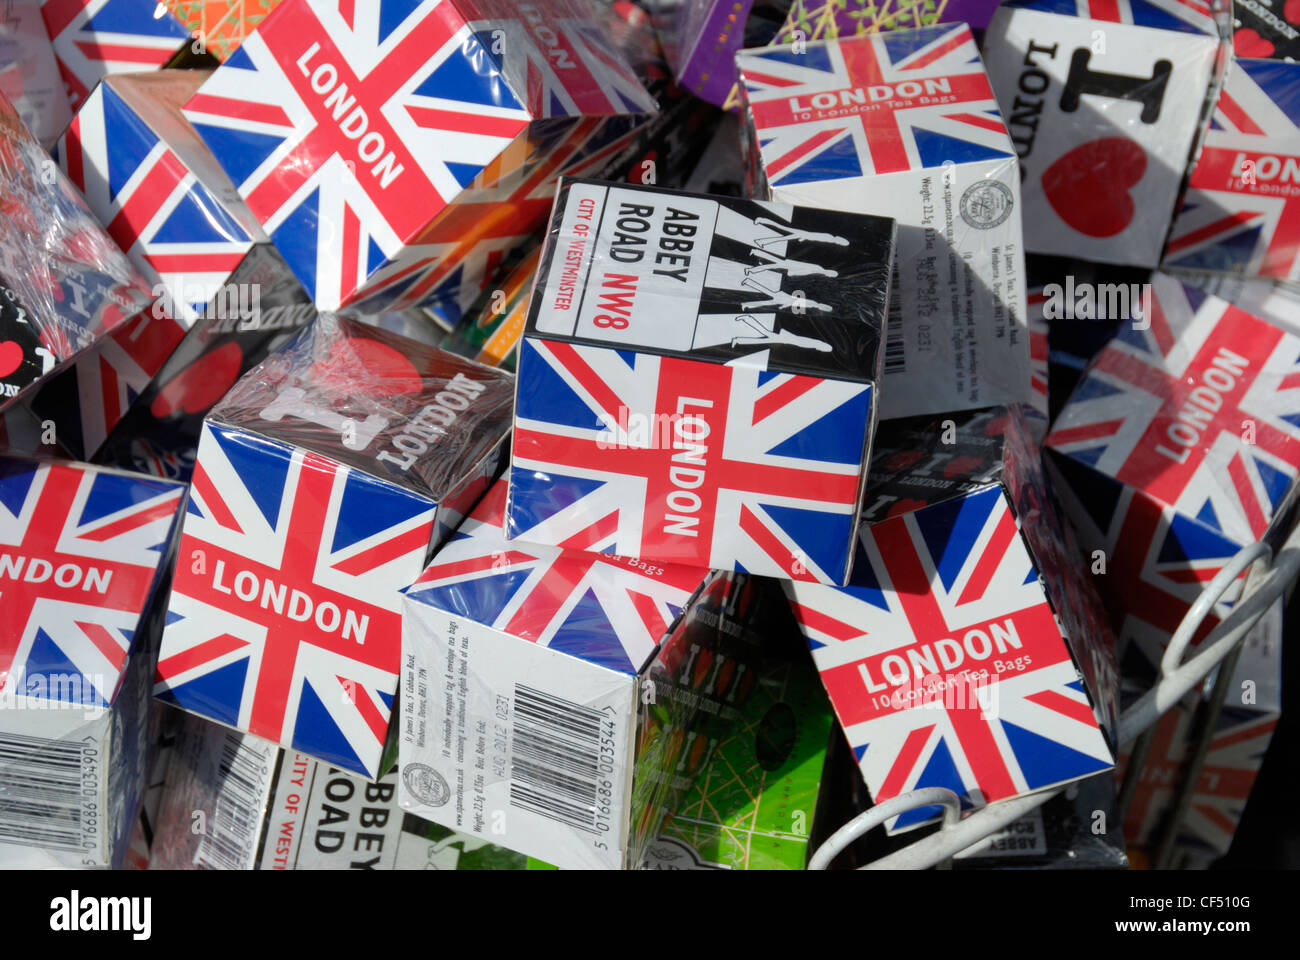 Pakete von London Souvenir Teebeutel zum Verkauf. Stockfoto